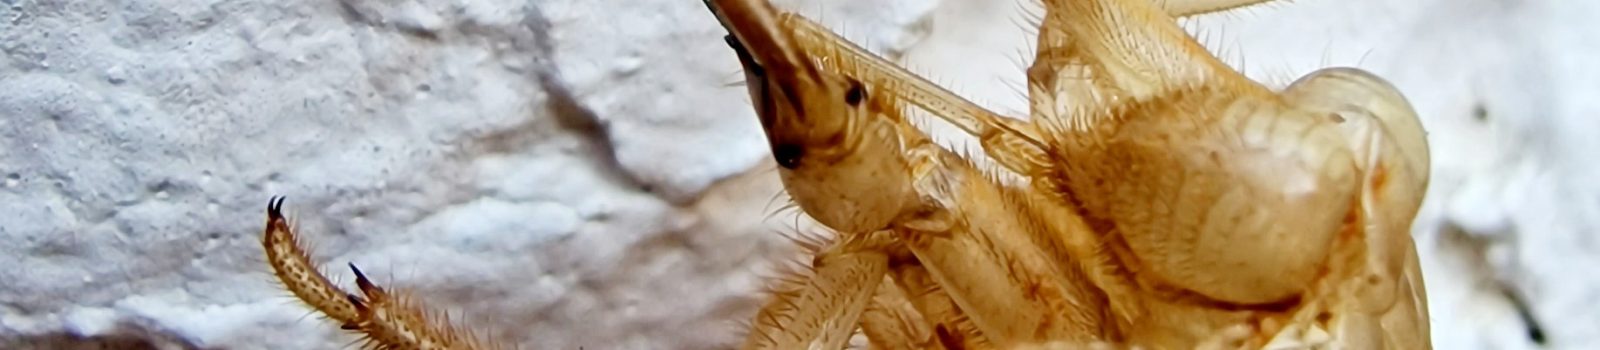 Skin of a cicada